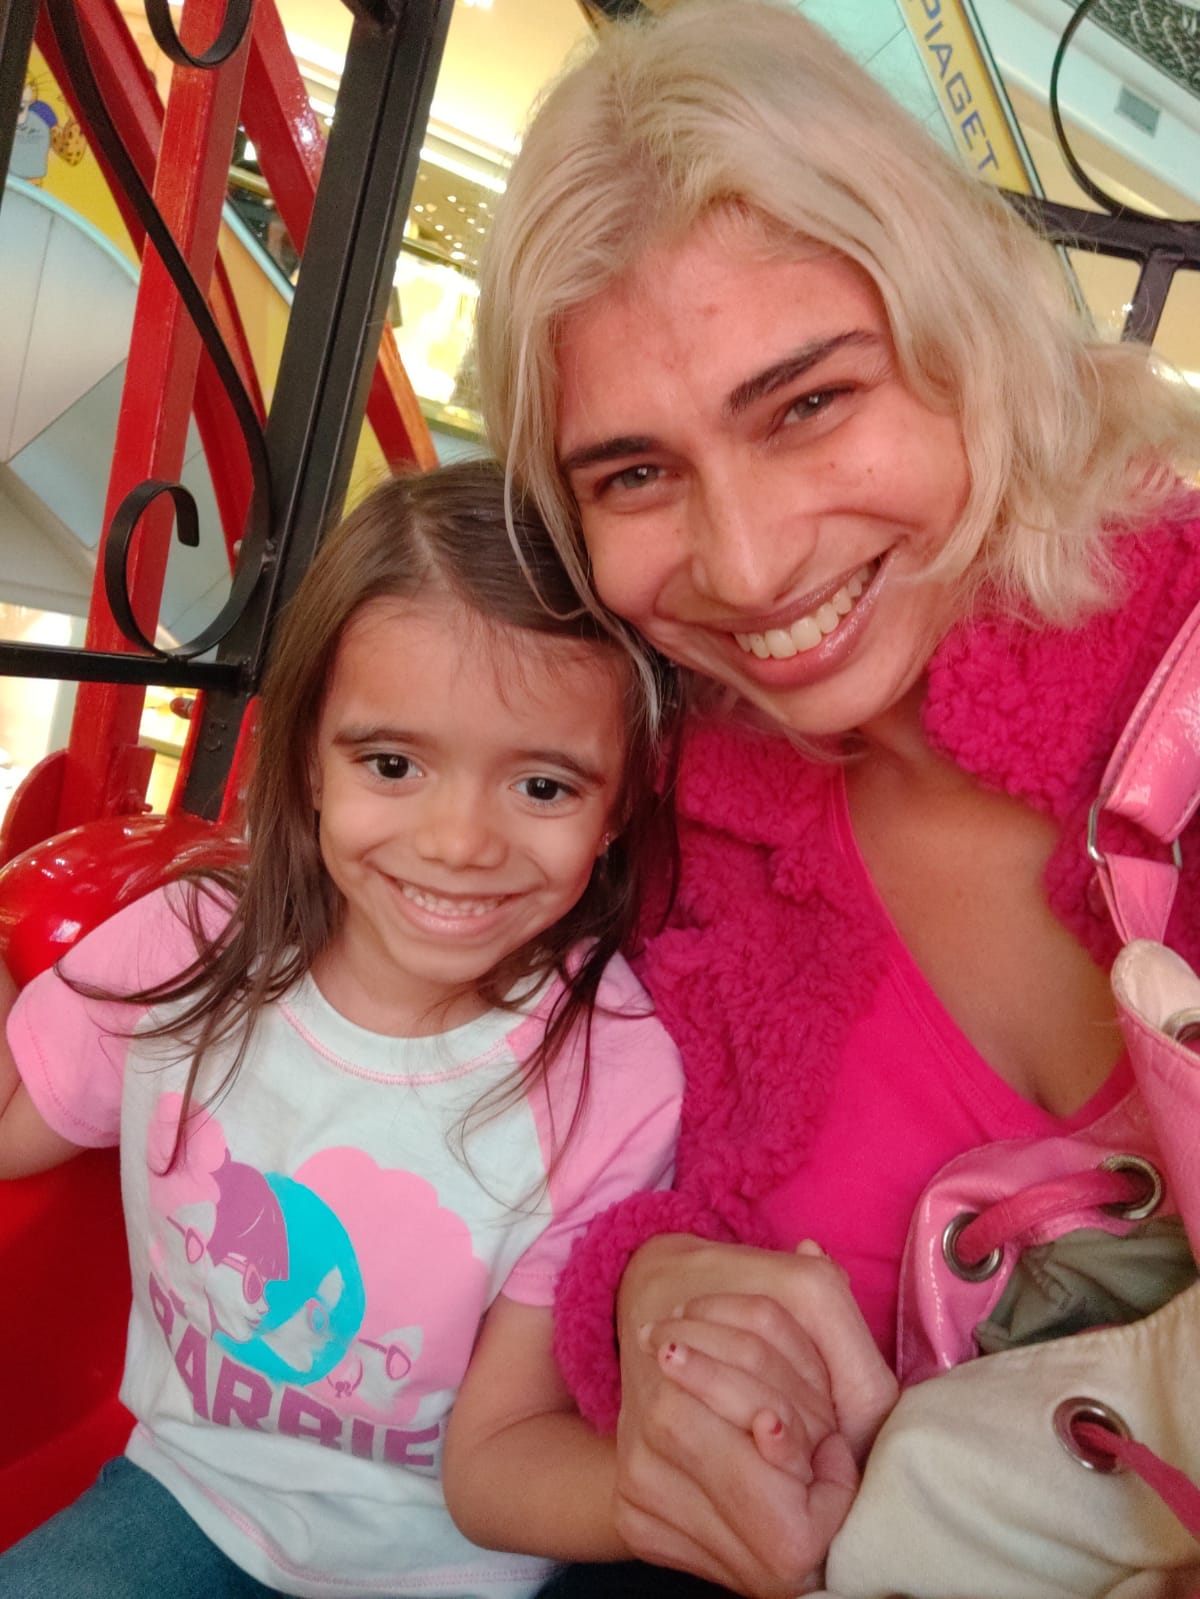 Mulher registra filha com o nome de Barbie por ser fã da boneca - Nacional  - Estado de Minas